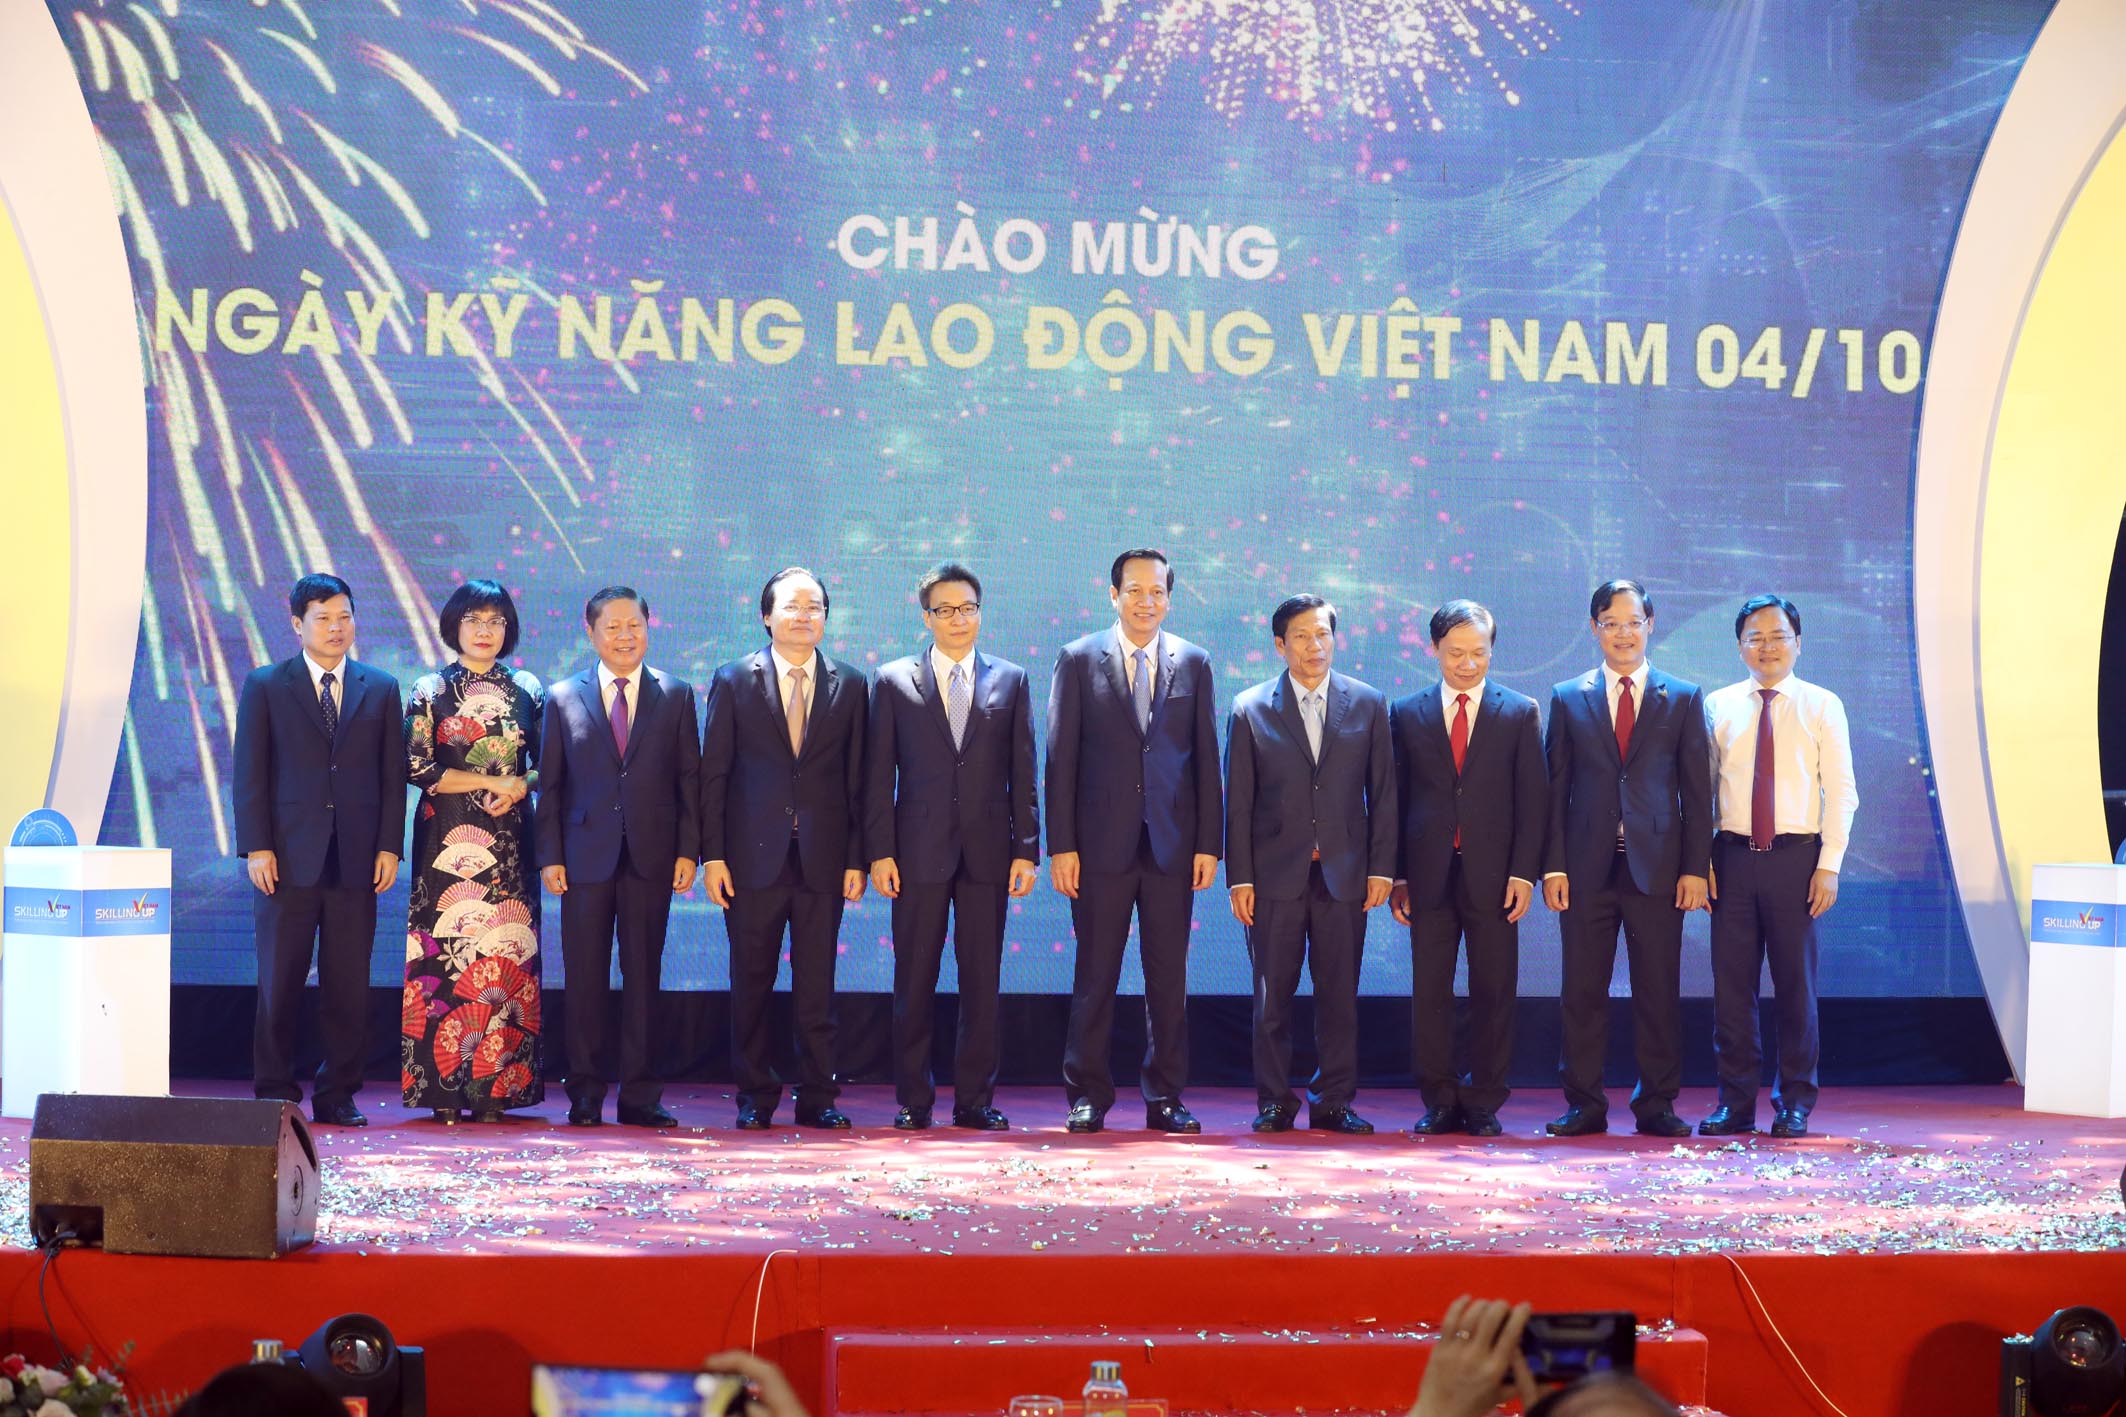 Phó thủ tướng Chính phủ Vũ Đức Đam cùng đại diện lãnh đạo các bộ ngành tại Lễ công bố Quyết định của Thủ tướng Chính phủ về ngày Kỹ năng Lao động Việt Nam